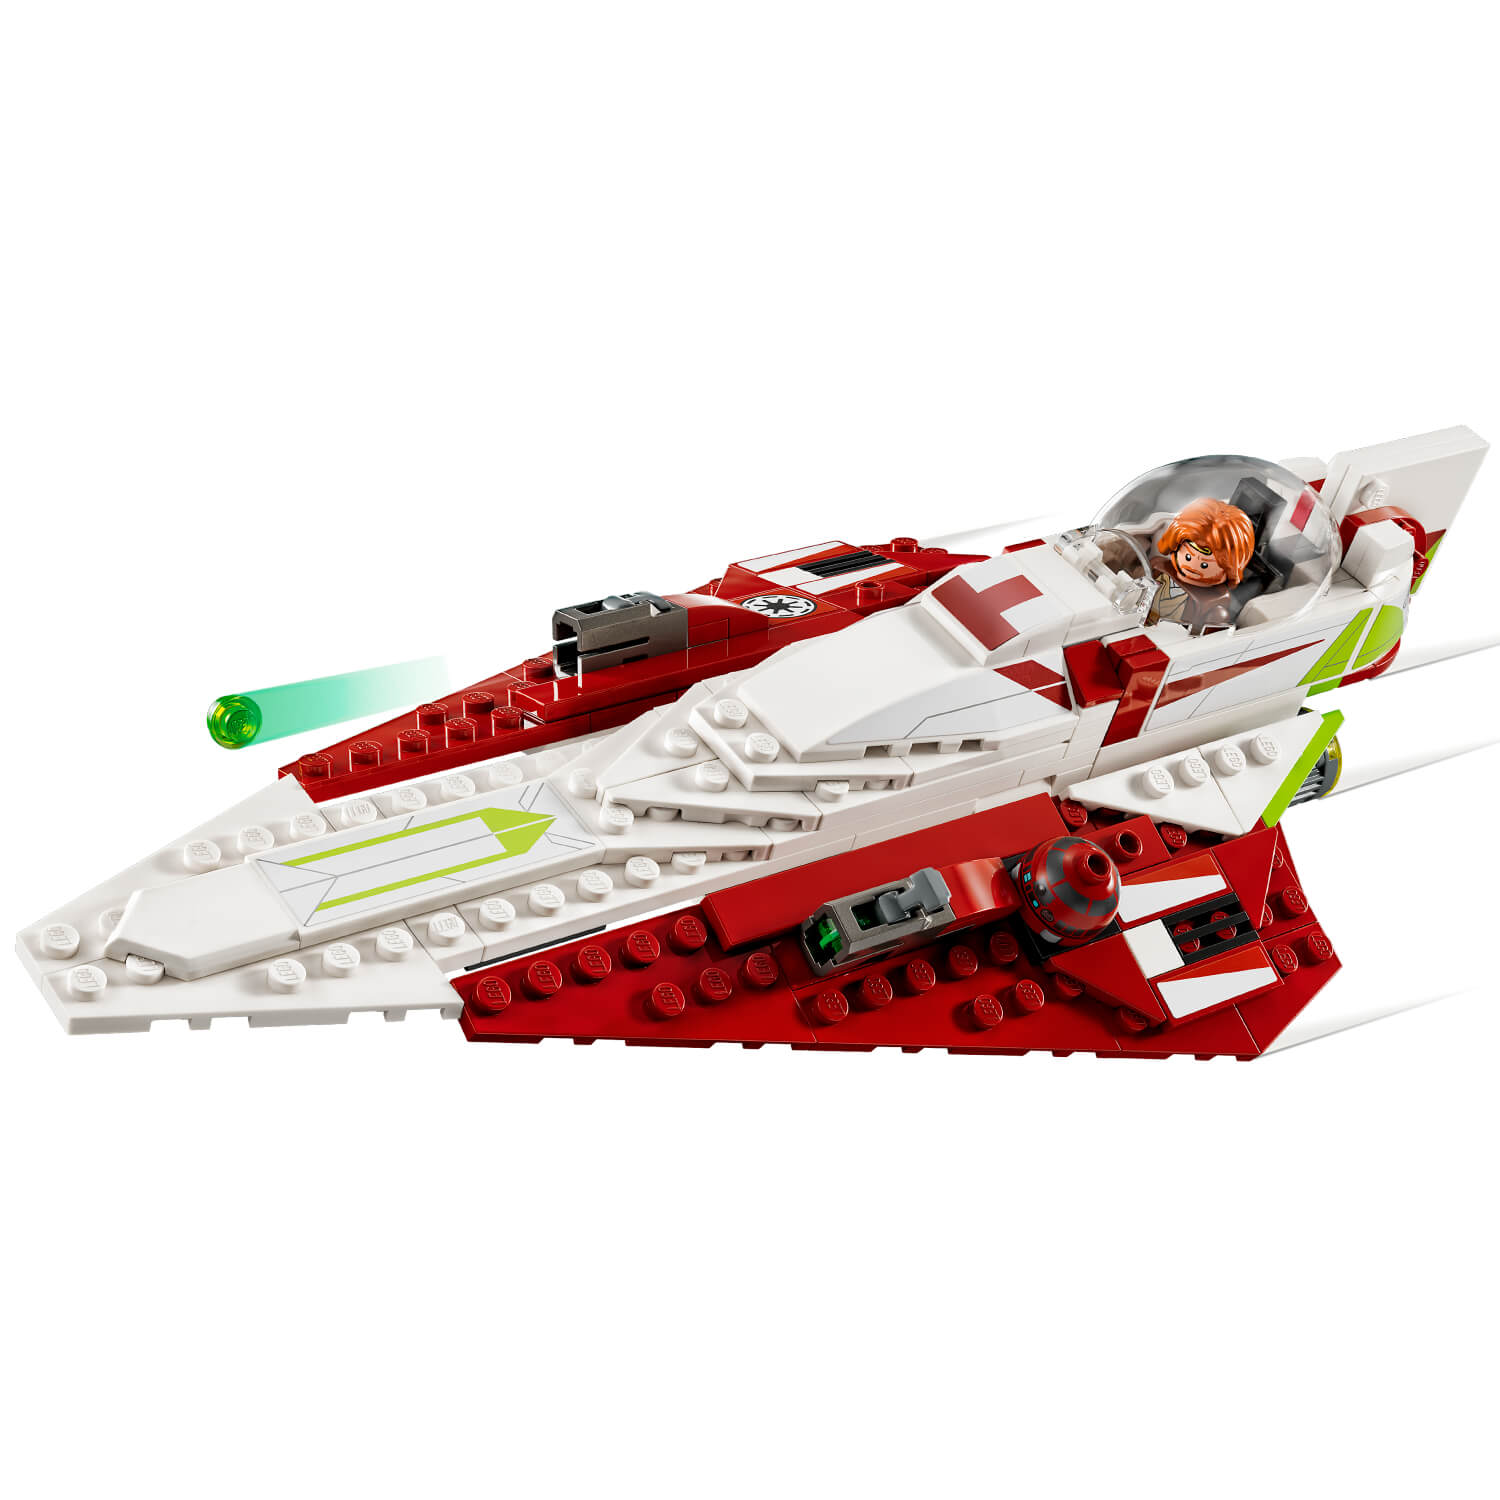 Lego 75333 Obi-Wan Kenobi-jev Jedi Starfighter™